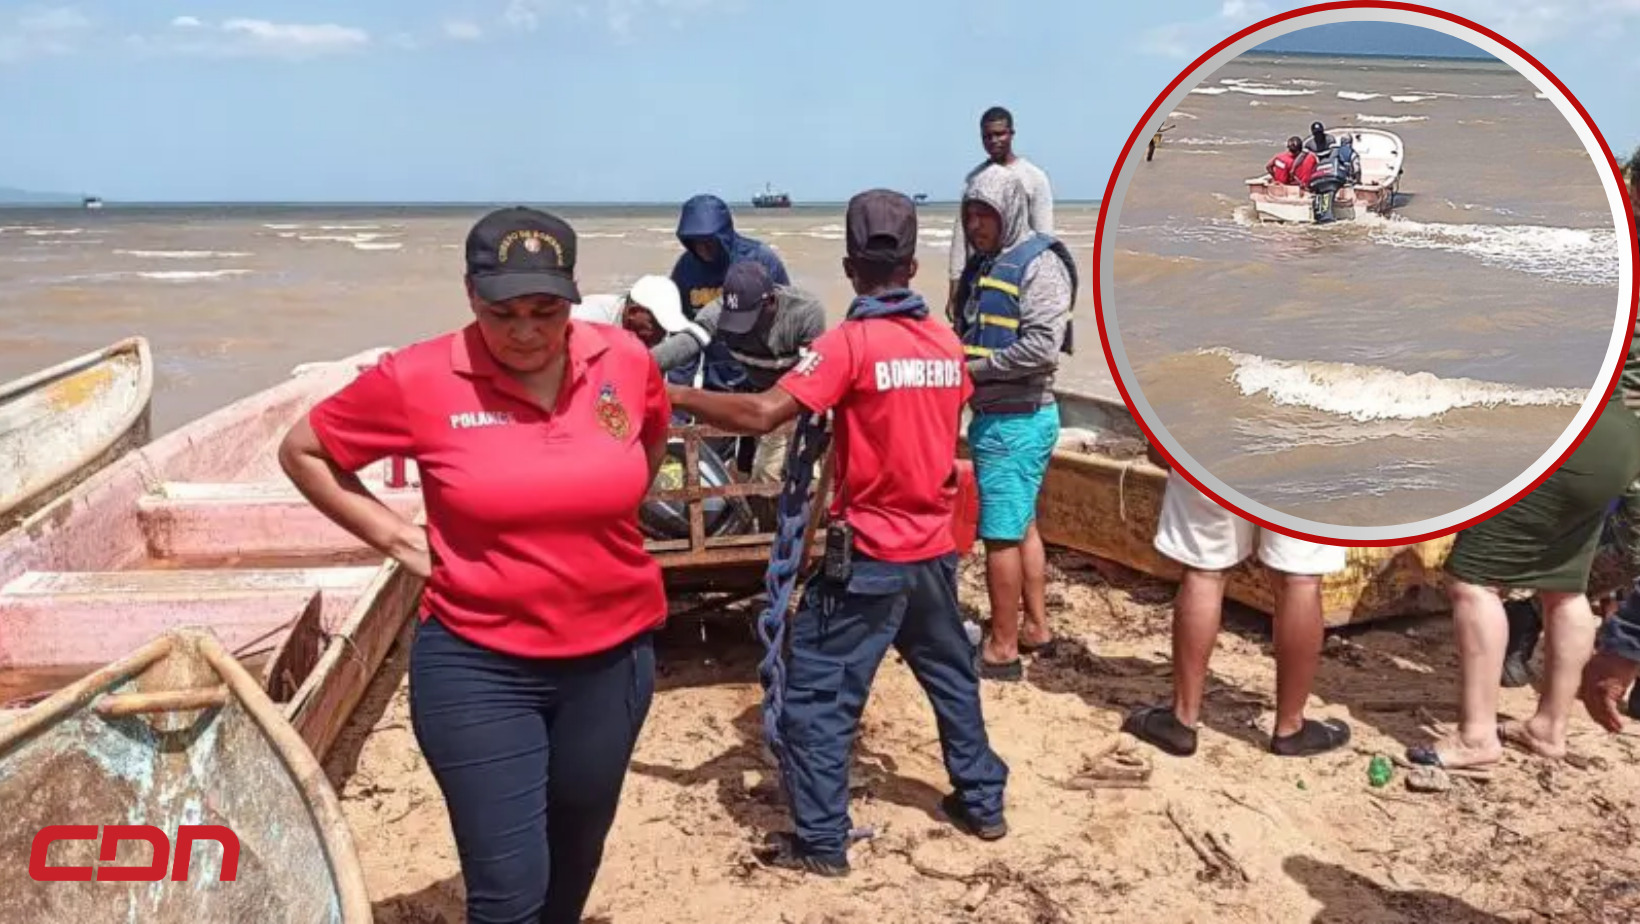 La Defensa Civil, los Bomberos y moradores se unen para encontrar a las personas desaparecidas tras zozobrarse embarcación en Sabana de la Mar. Foto: CDN Digital